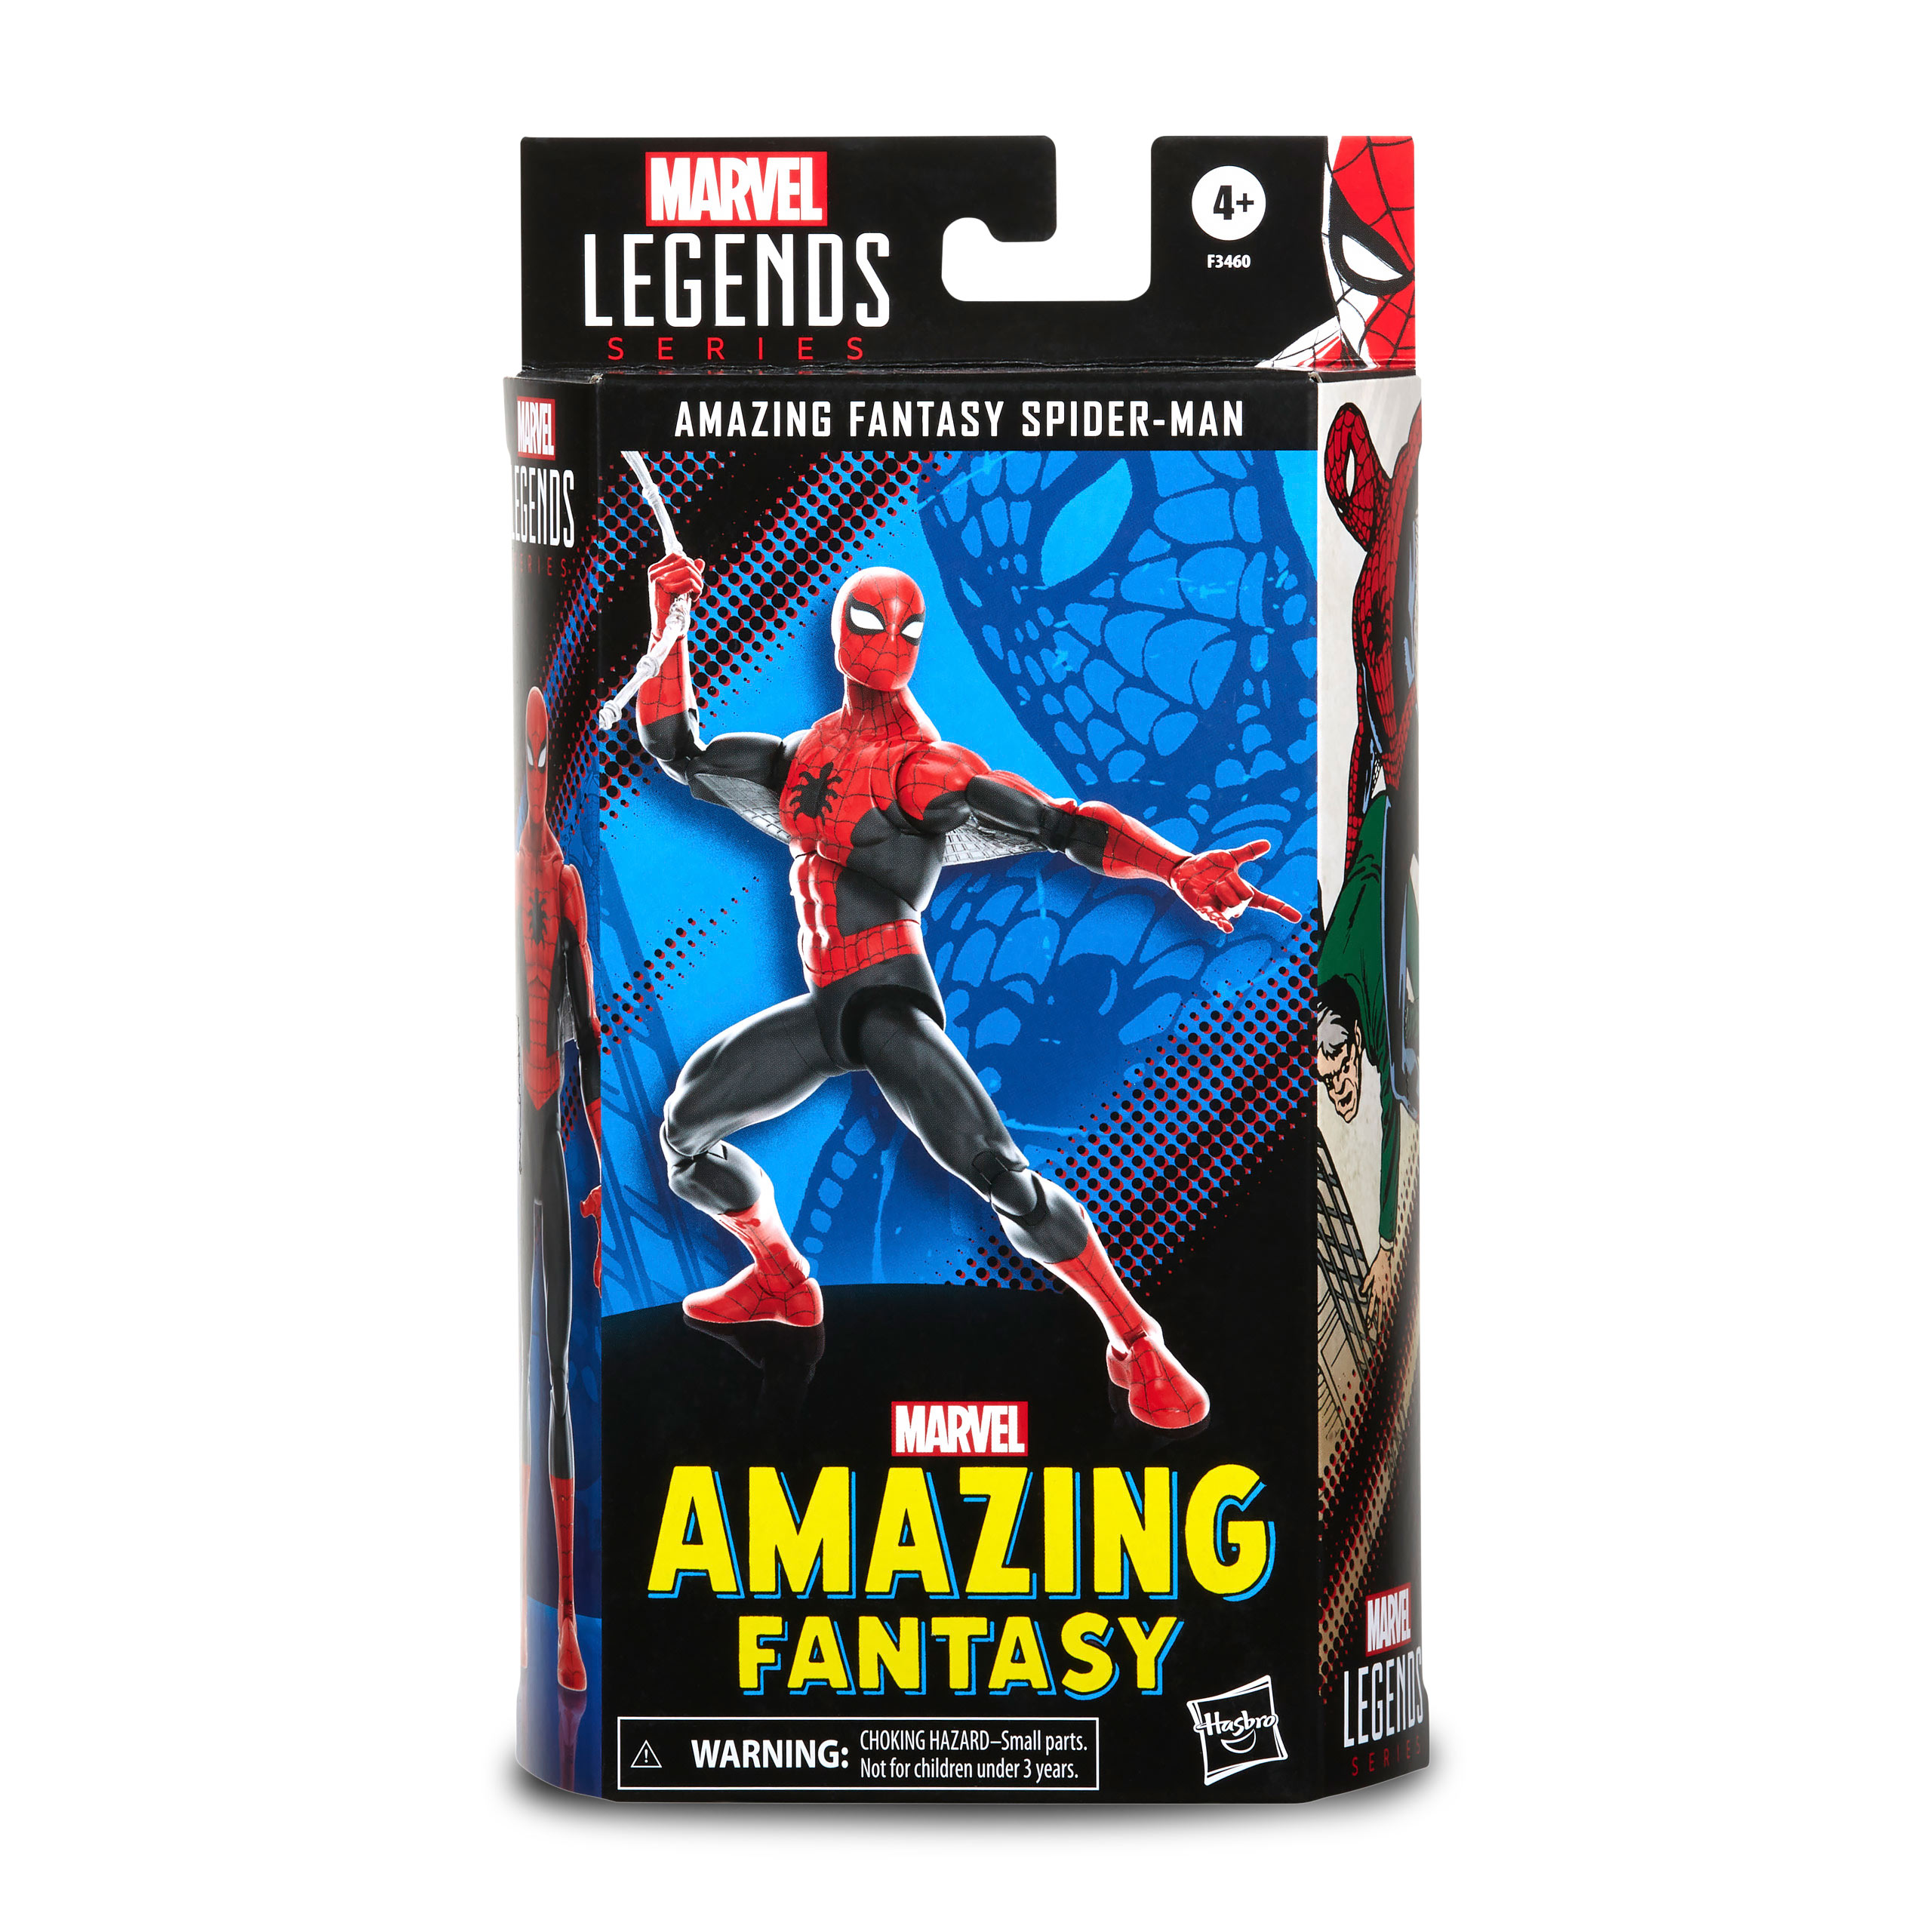 Marvel - Spider-Man Actionfigur